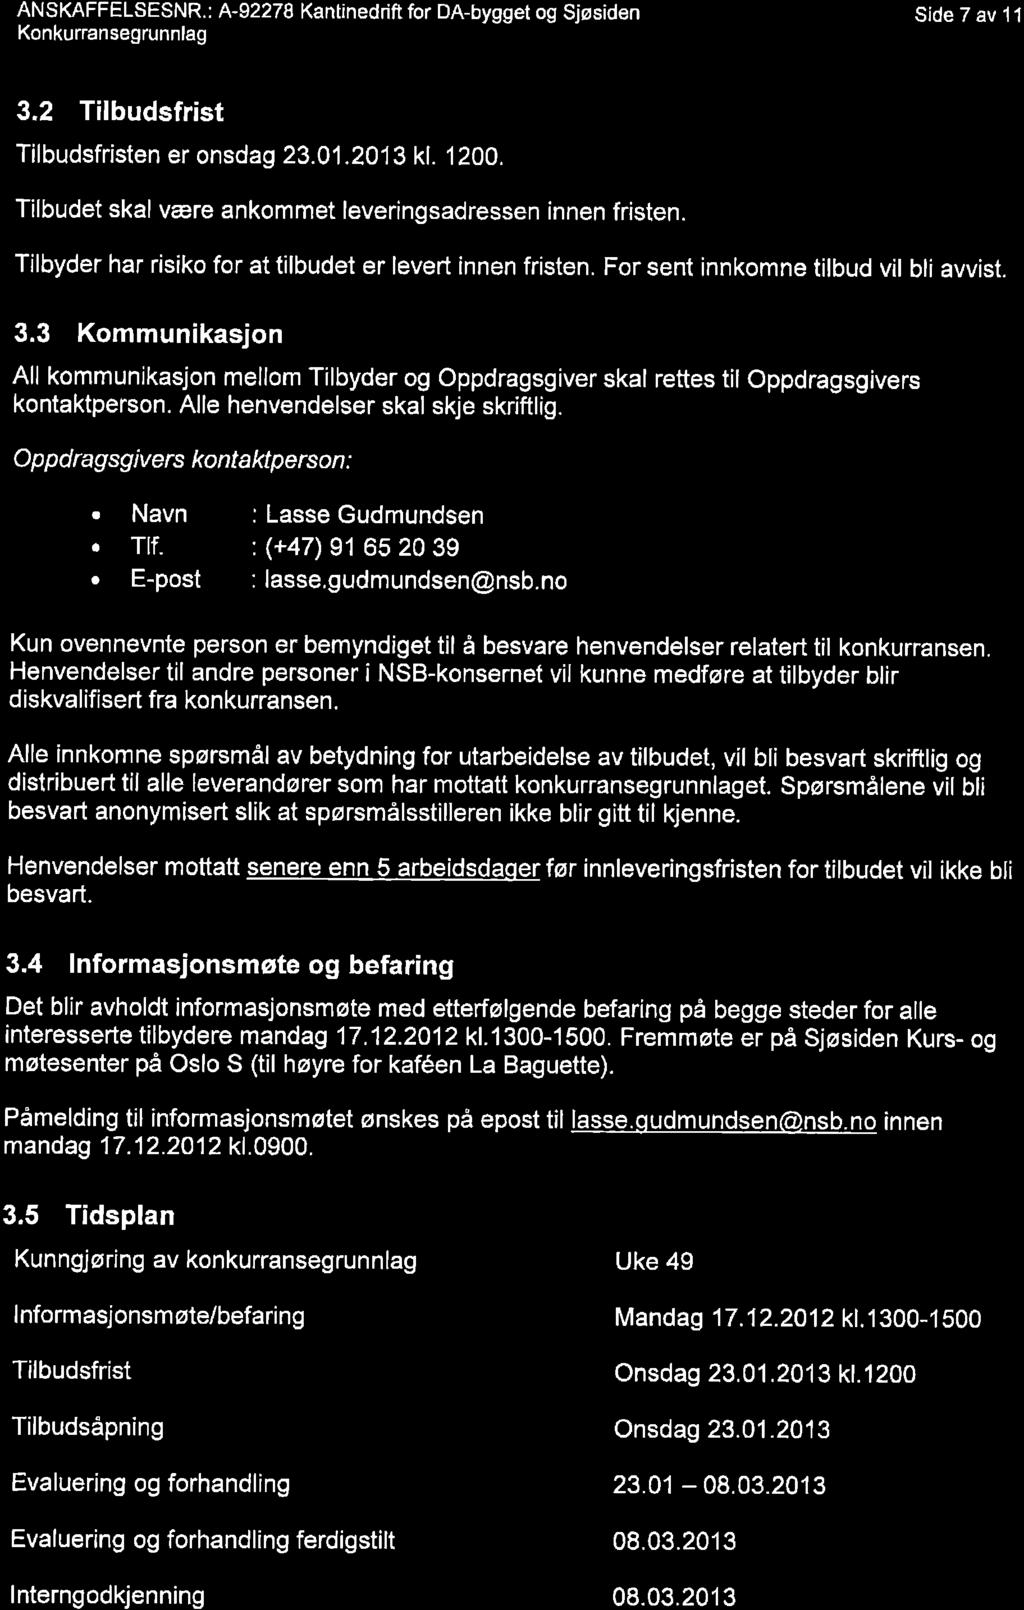 ANSKAFFELSESNR.: A-92278 Kantinedrift for DA-bygget og Sjøsiden Konkurransegrunnlag Side 7 av 1l 3.2 Tilbudsfrist Tilbudsfristen er onsdag 23.01.2013 kf. 1200.